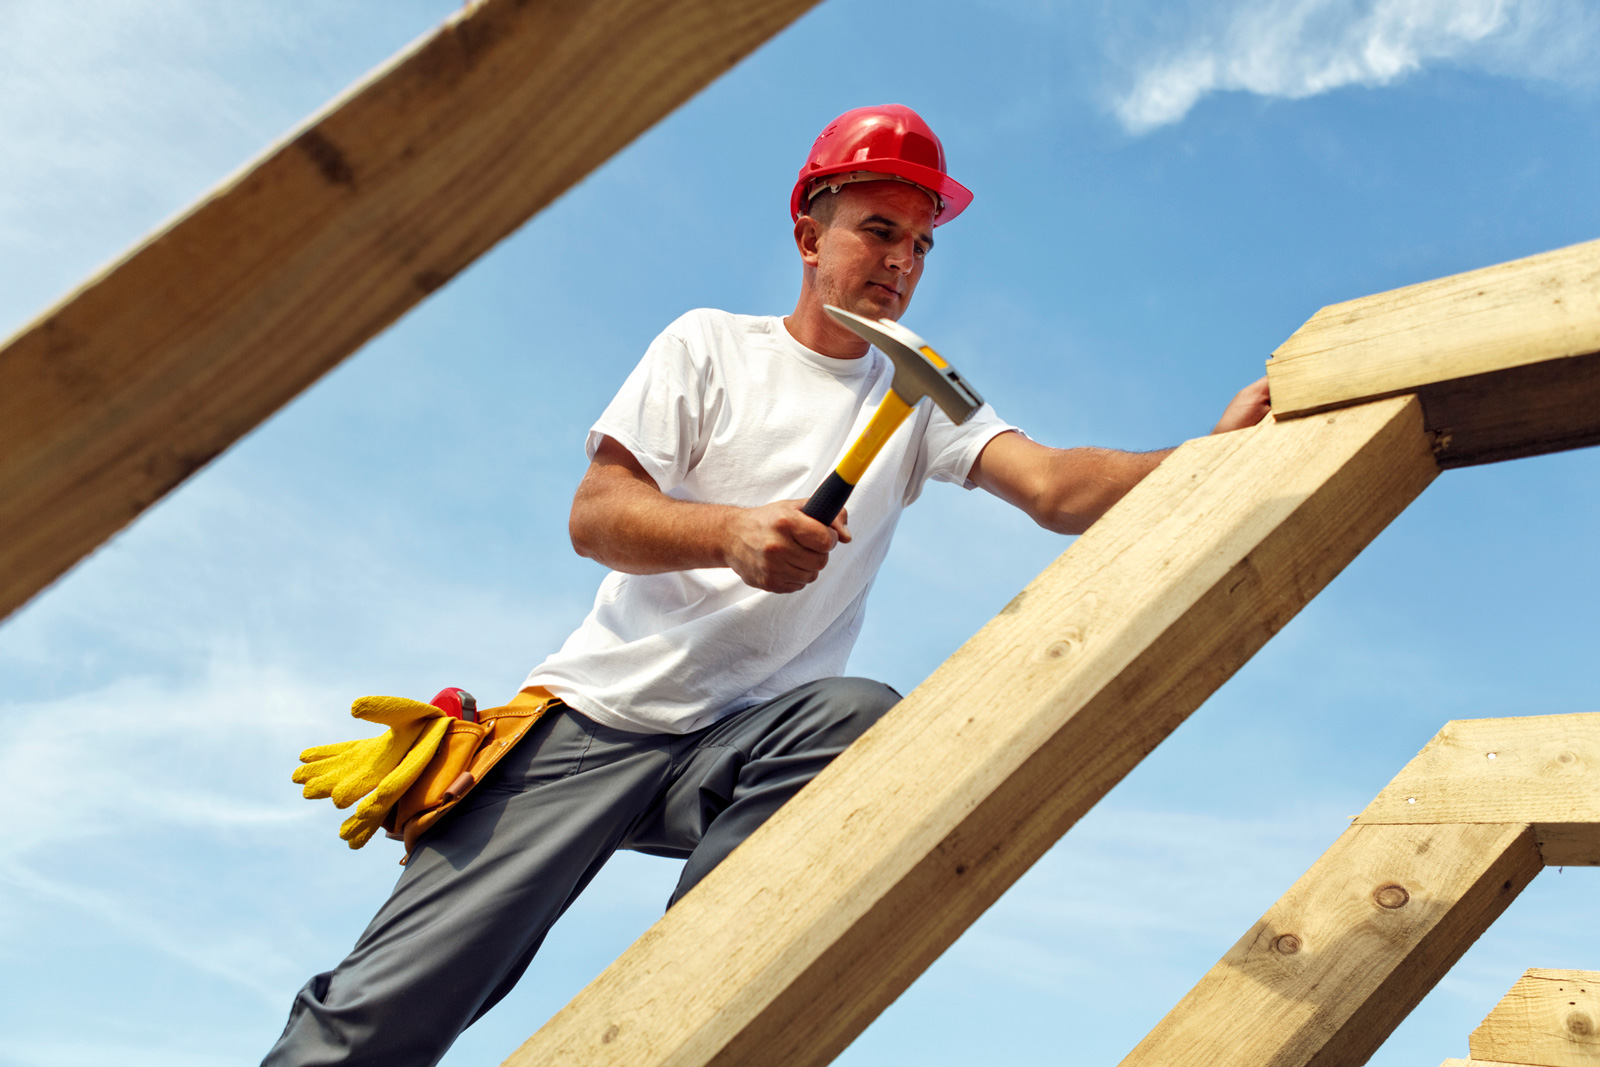 Holz wir besonders beim Bau von Dachstühle eongesetzt.